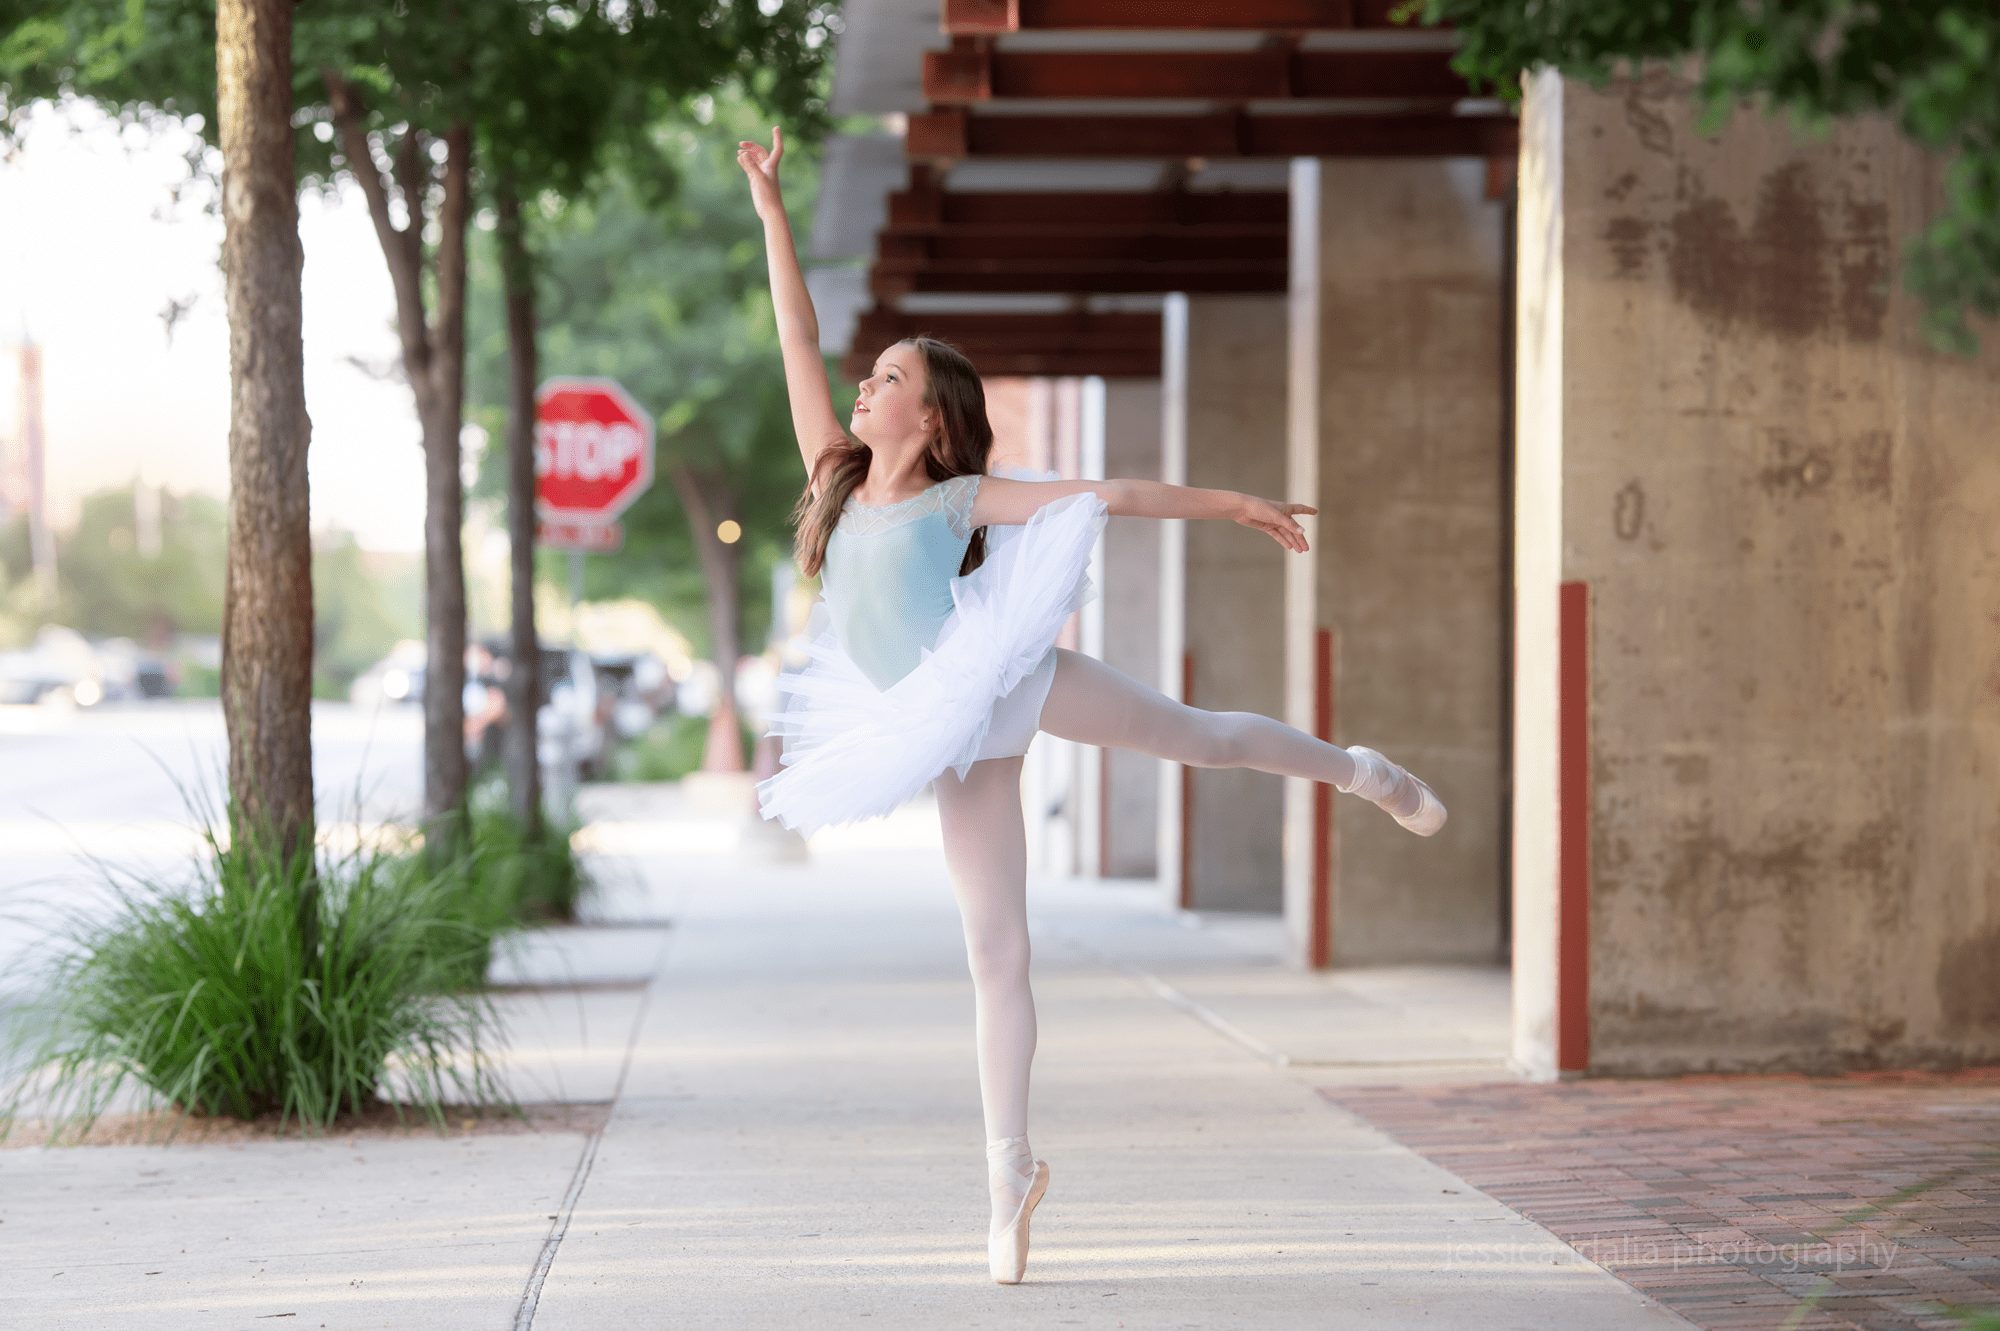 Ballerina portrait dancing in the sidewalk 